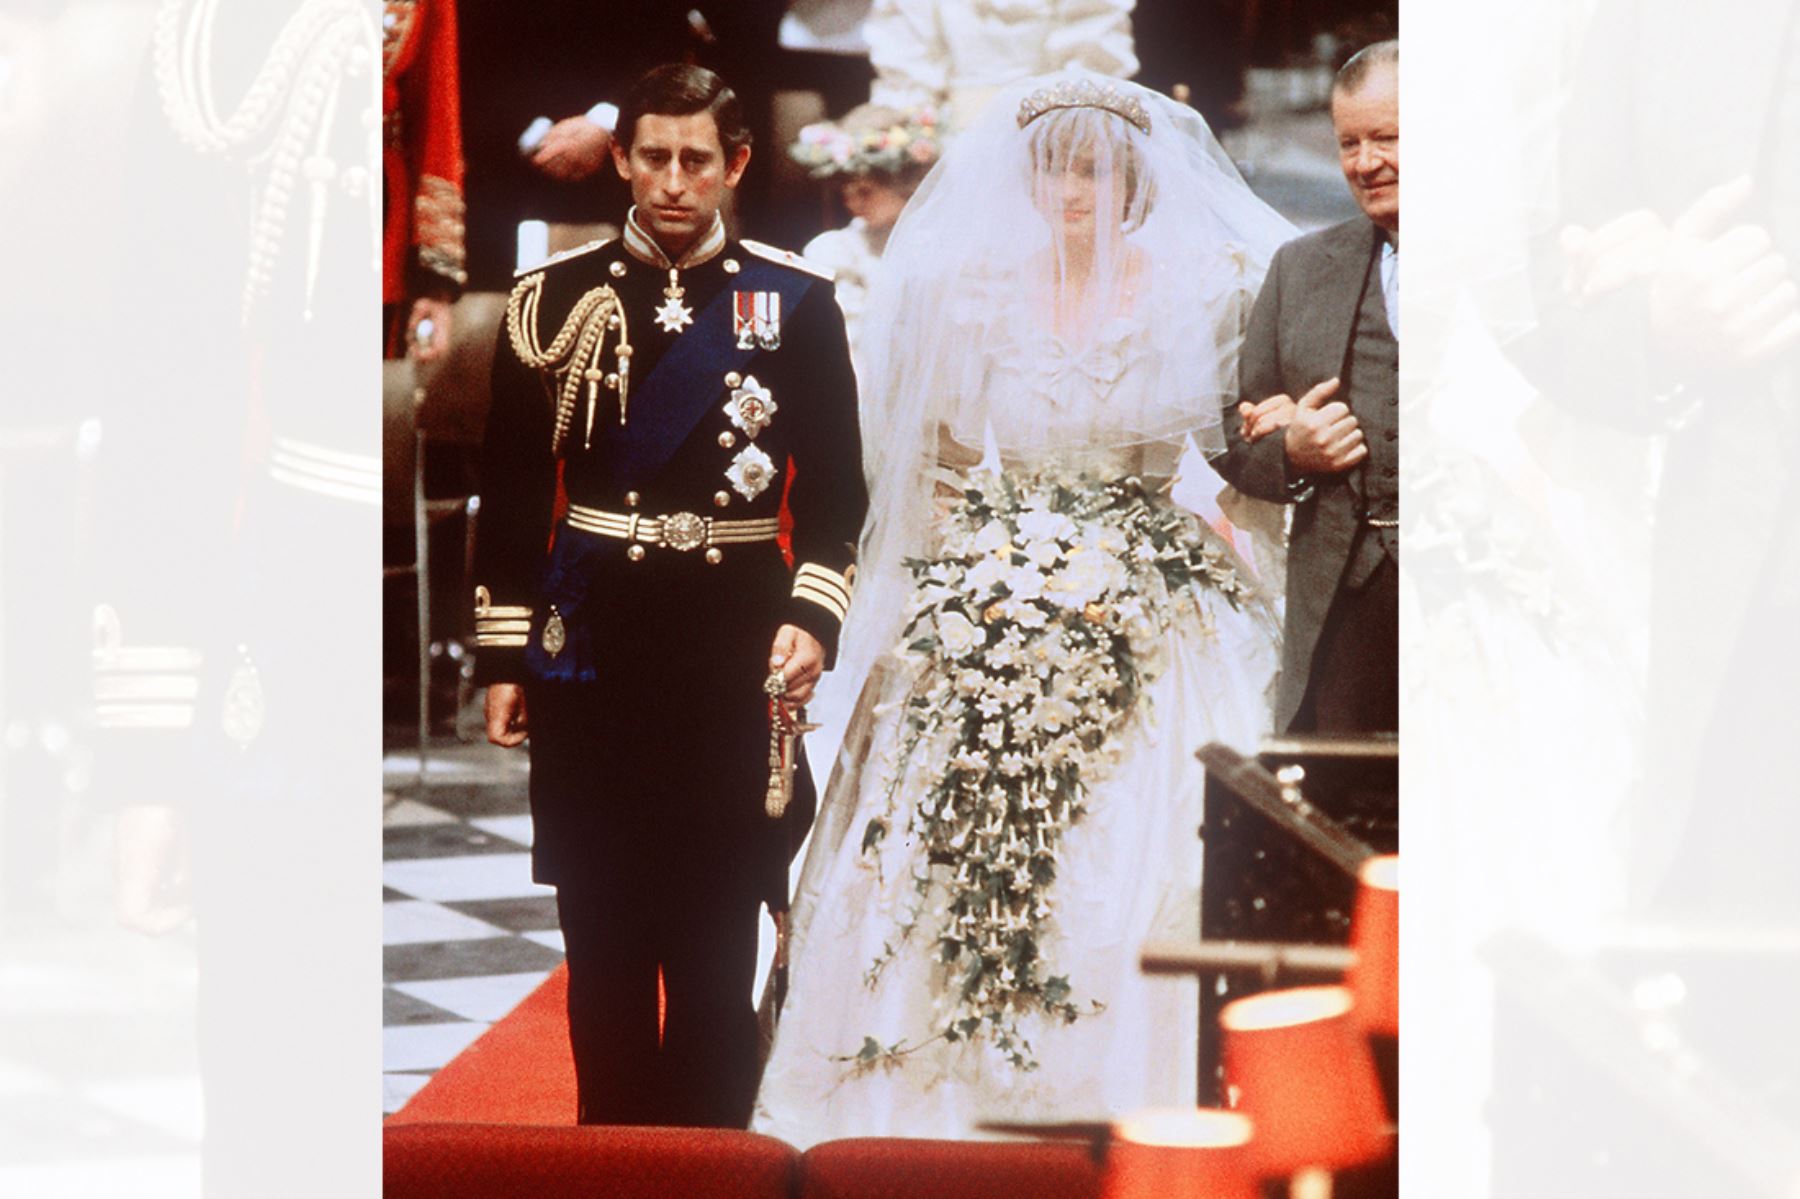 Fotografía  tomada el 29 de julio de 1981 muestra al príncipe Carlos de Gran Bretaña y Lady Diana, princesa de Gales, el día de su boda en la Catedral de San Pablo en Londres. 
Foto: AFP